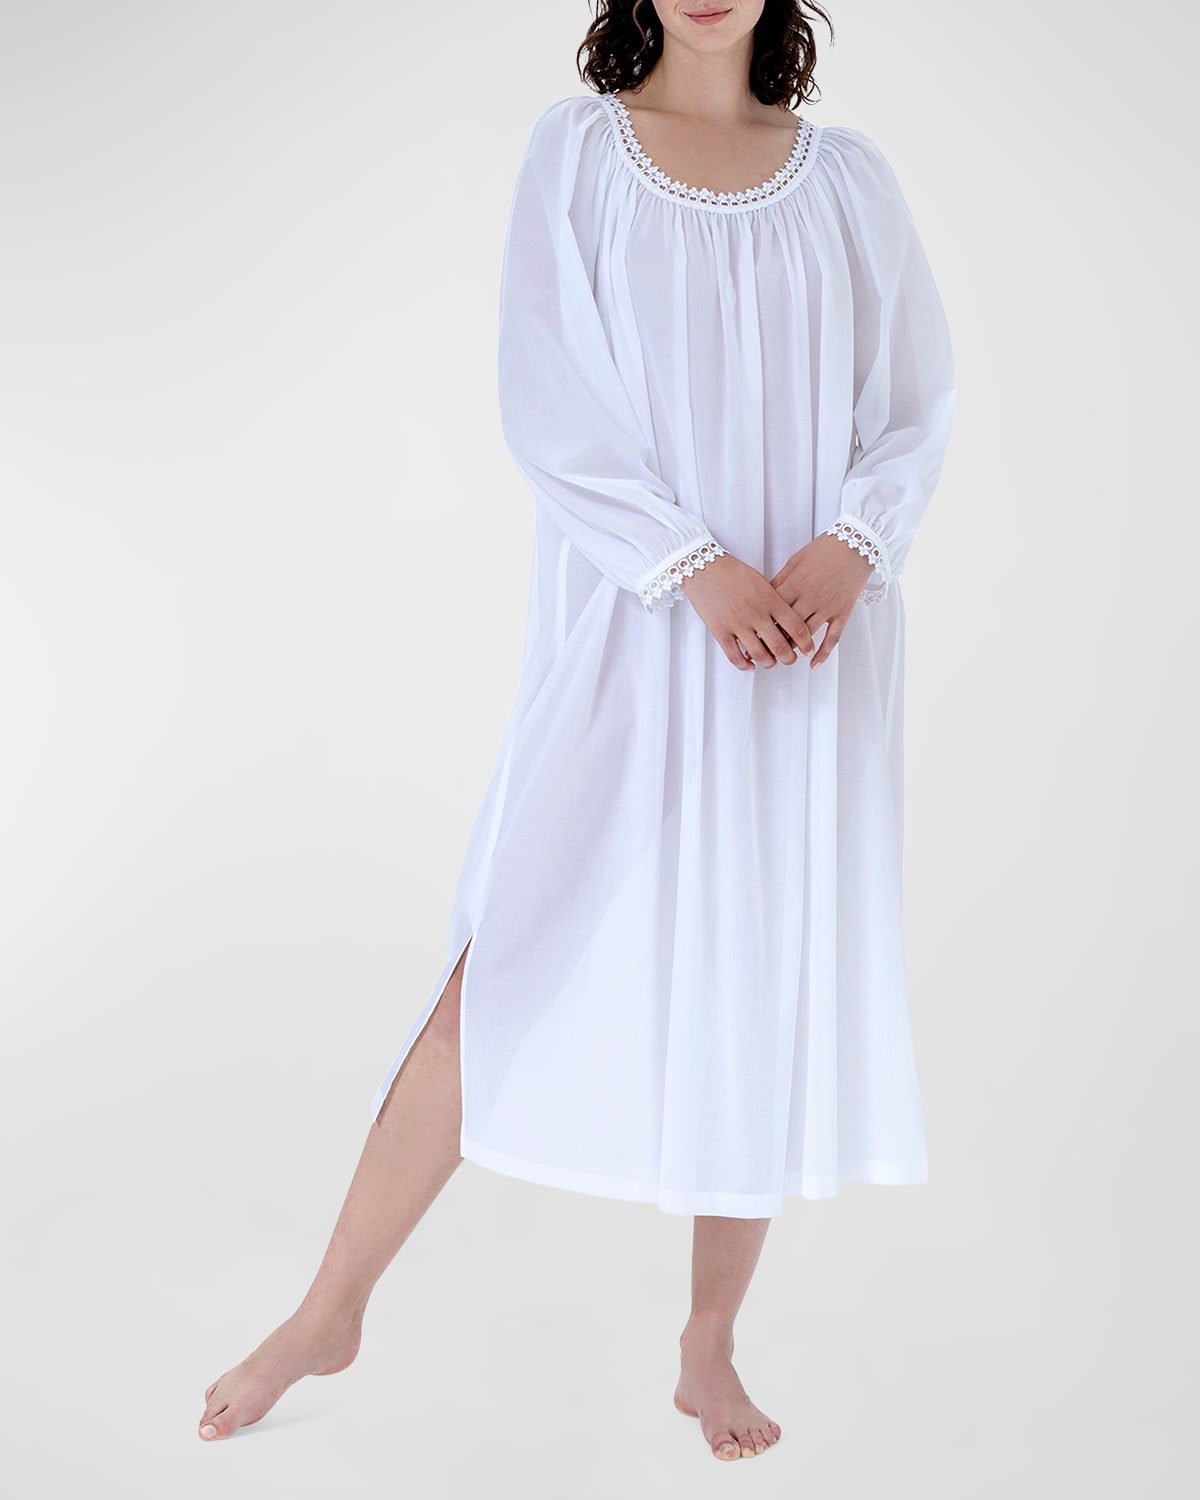 Celestine Monica-3 Striped Lace-trim Cotton Nightgown In White